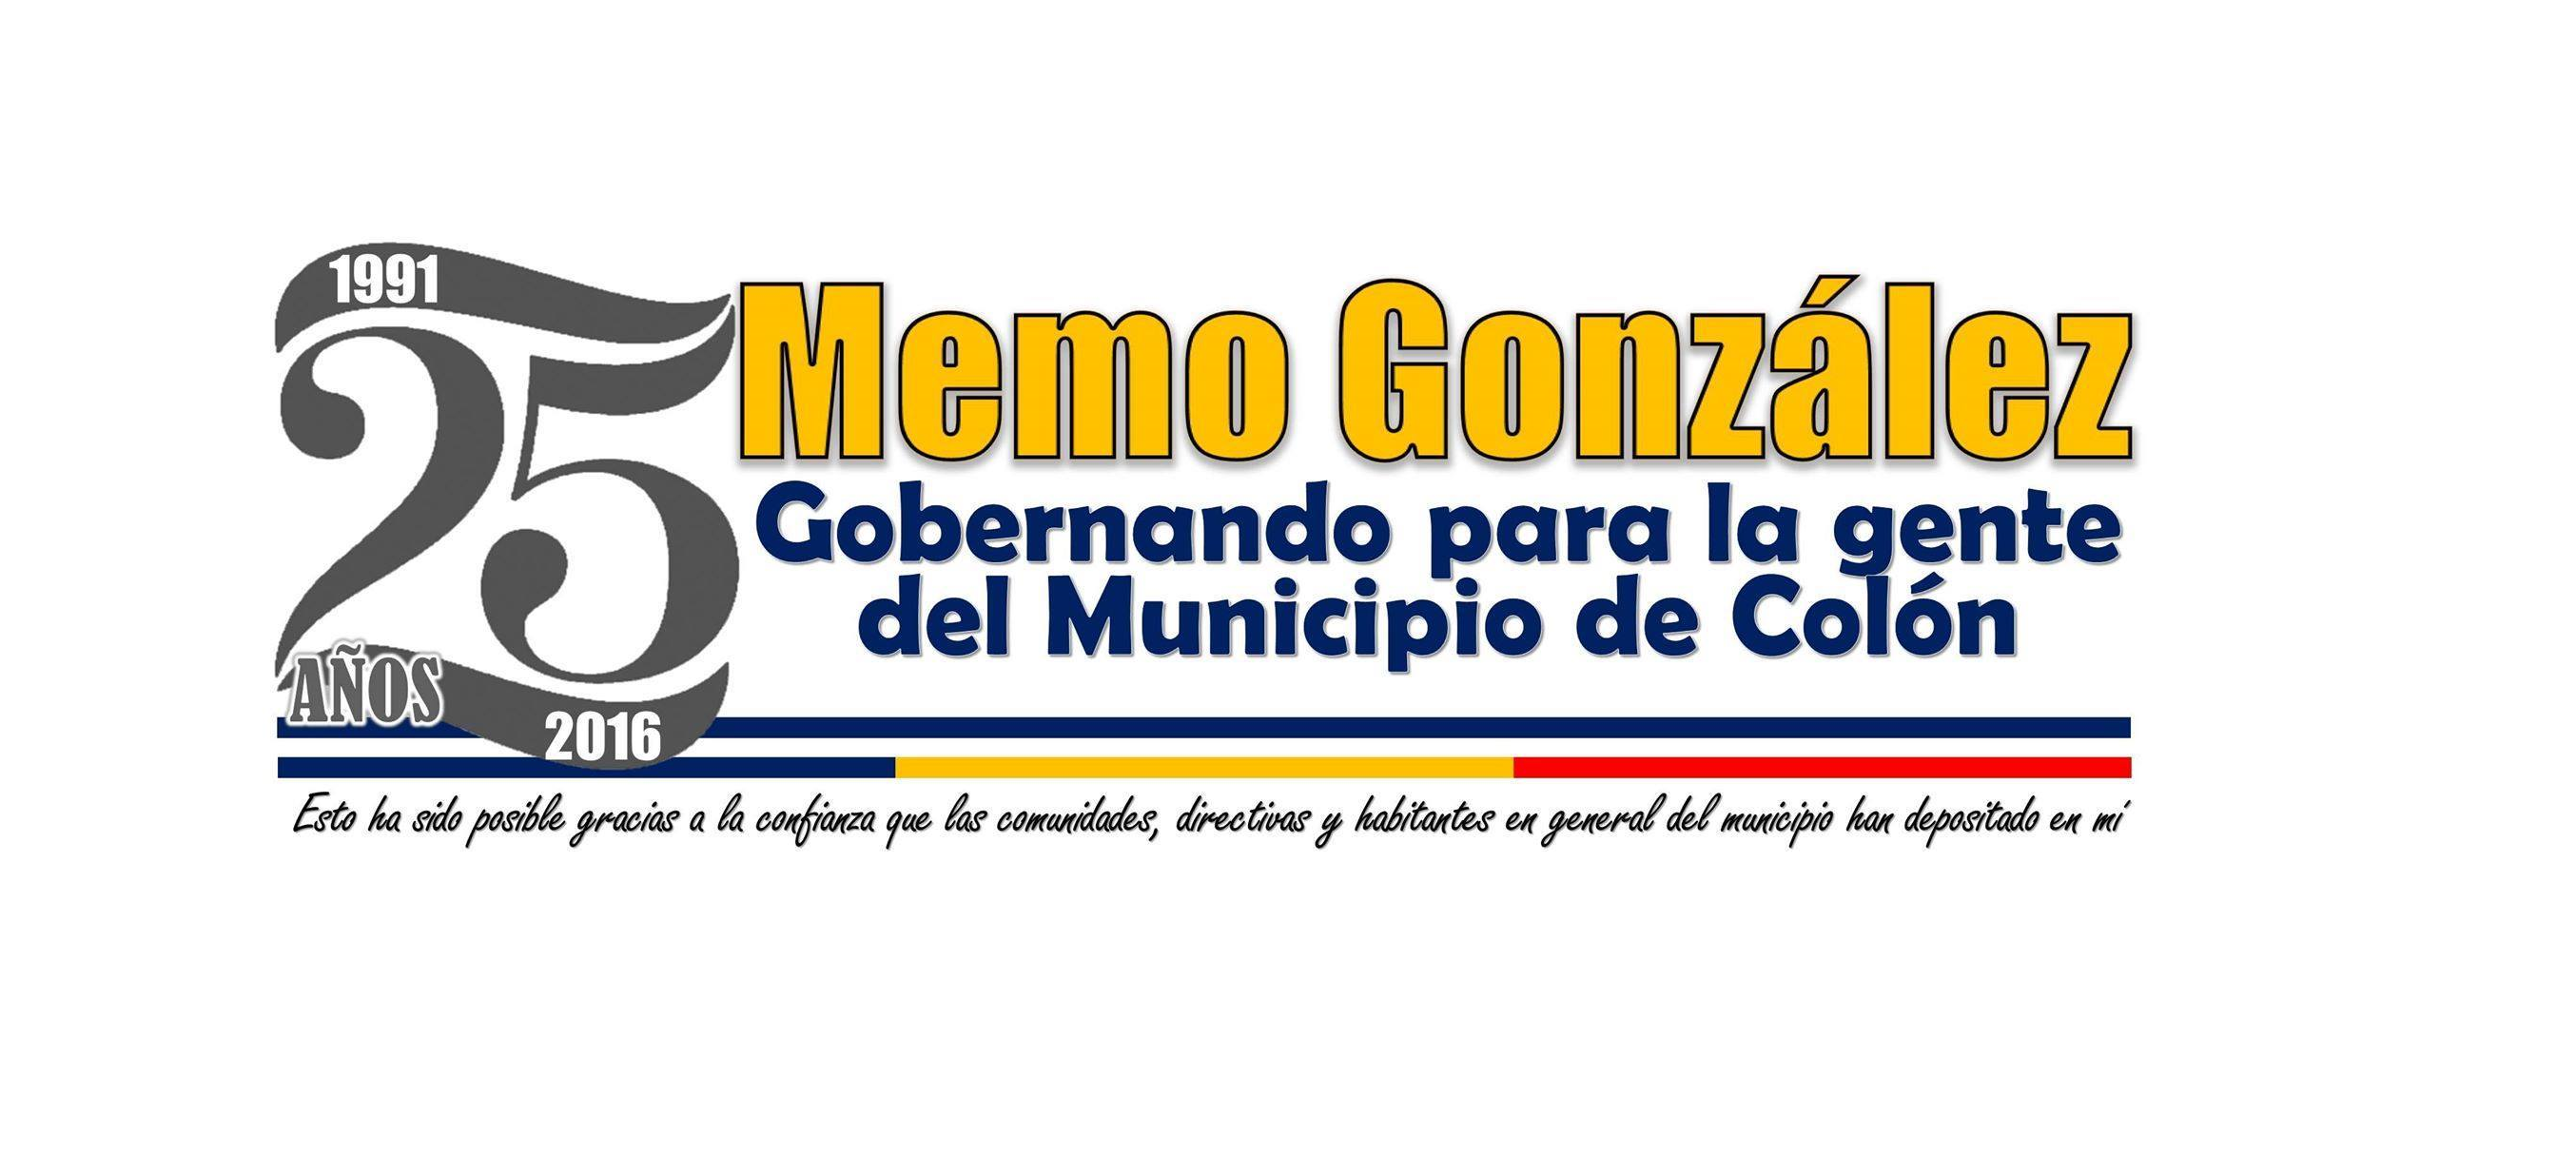 25 AÑOS GOBERNANDO PARA LA GENTE DEL MUNICIPIO DE COLÓN